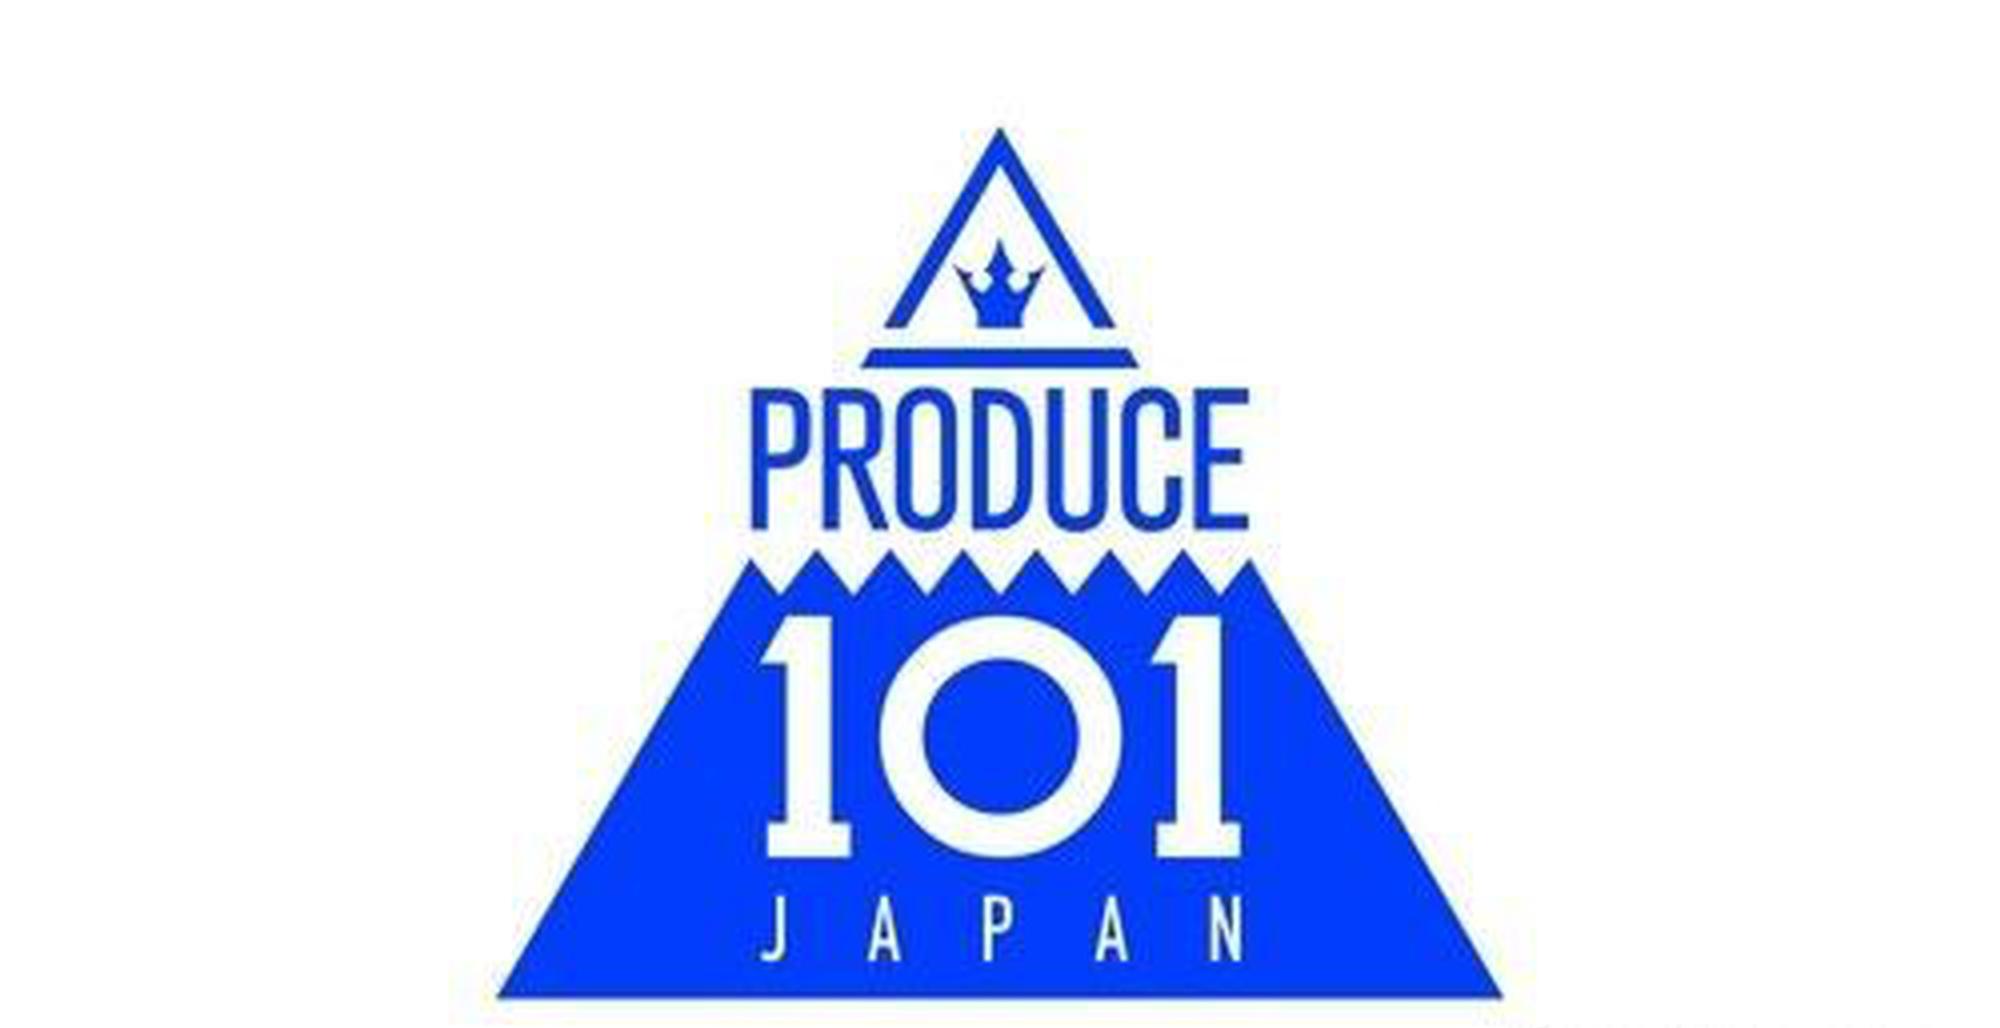 日本版《Produce 101》正拍摄